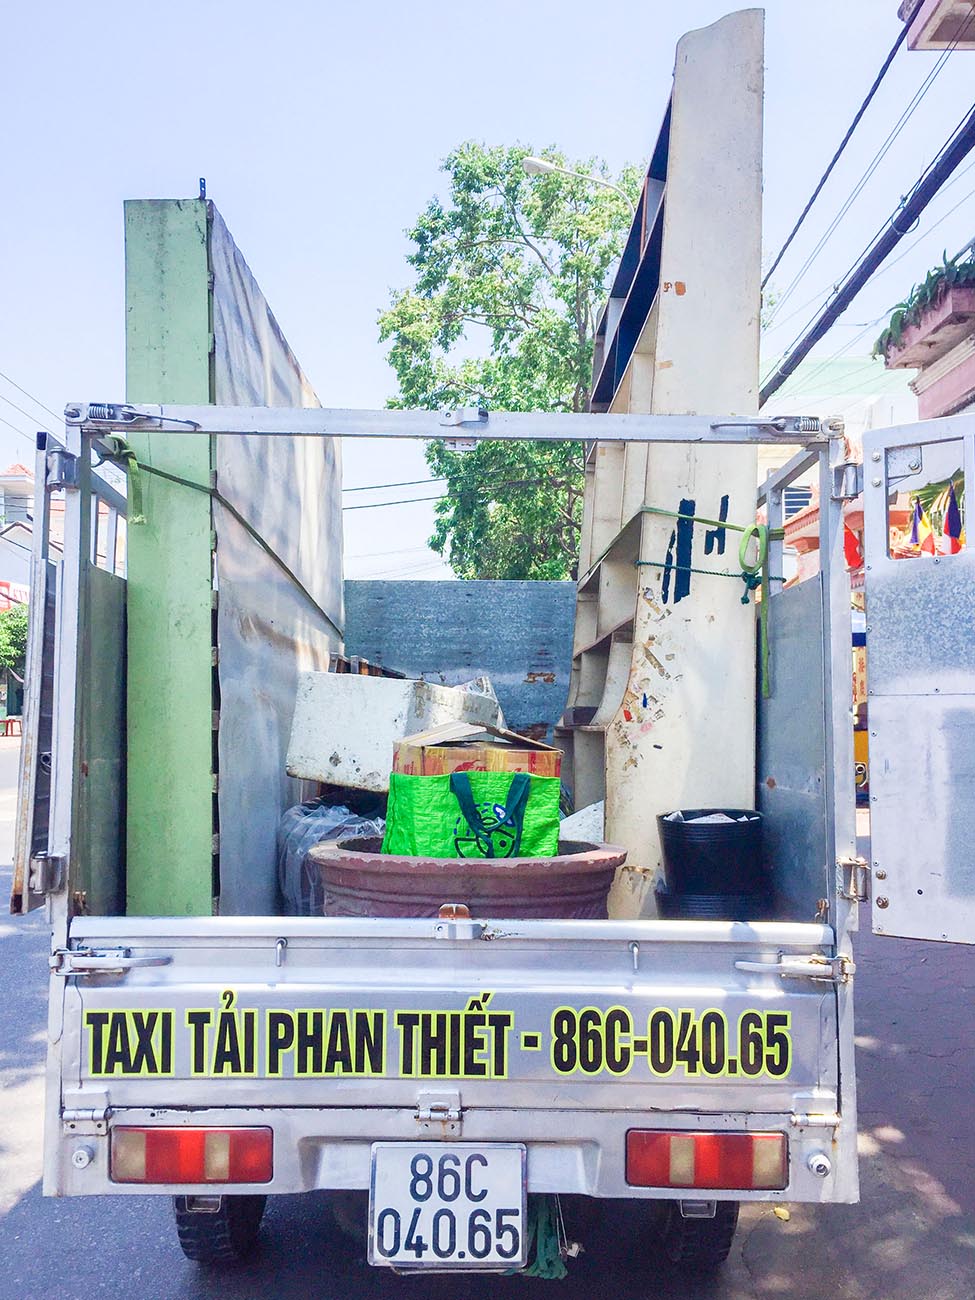 Chọn dịch vụ bên Taxi tải Phan Thiết Khách hàng sẽ yên tâm và hài lòng nhất